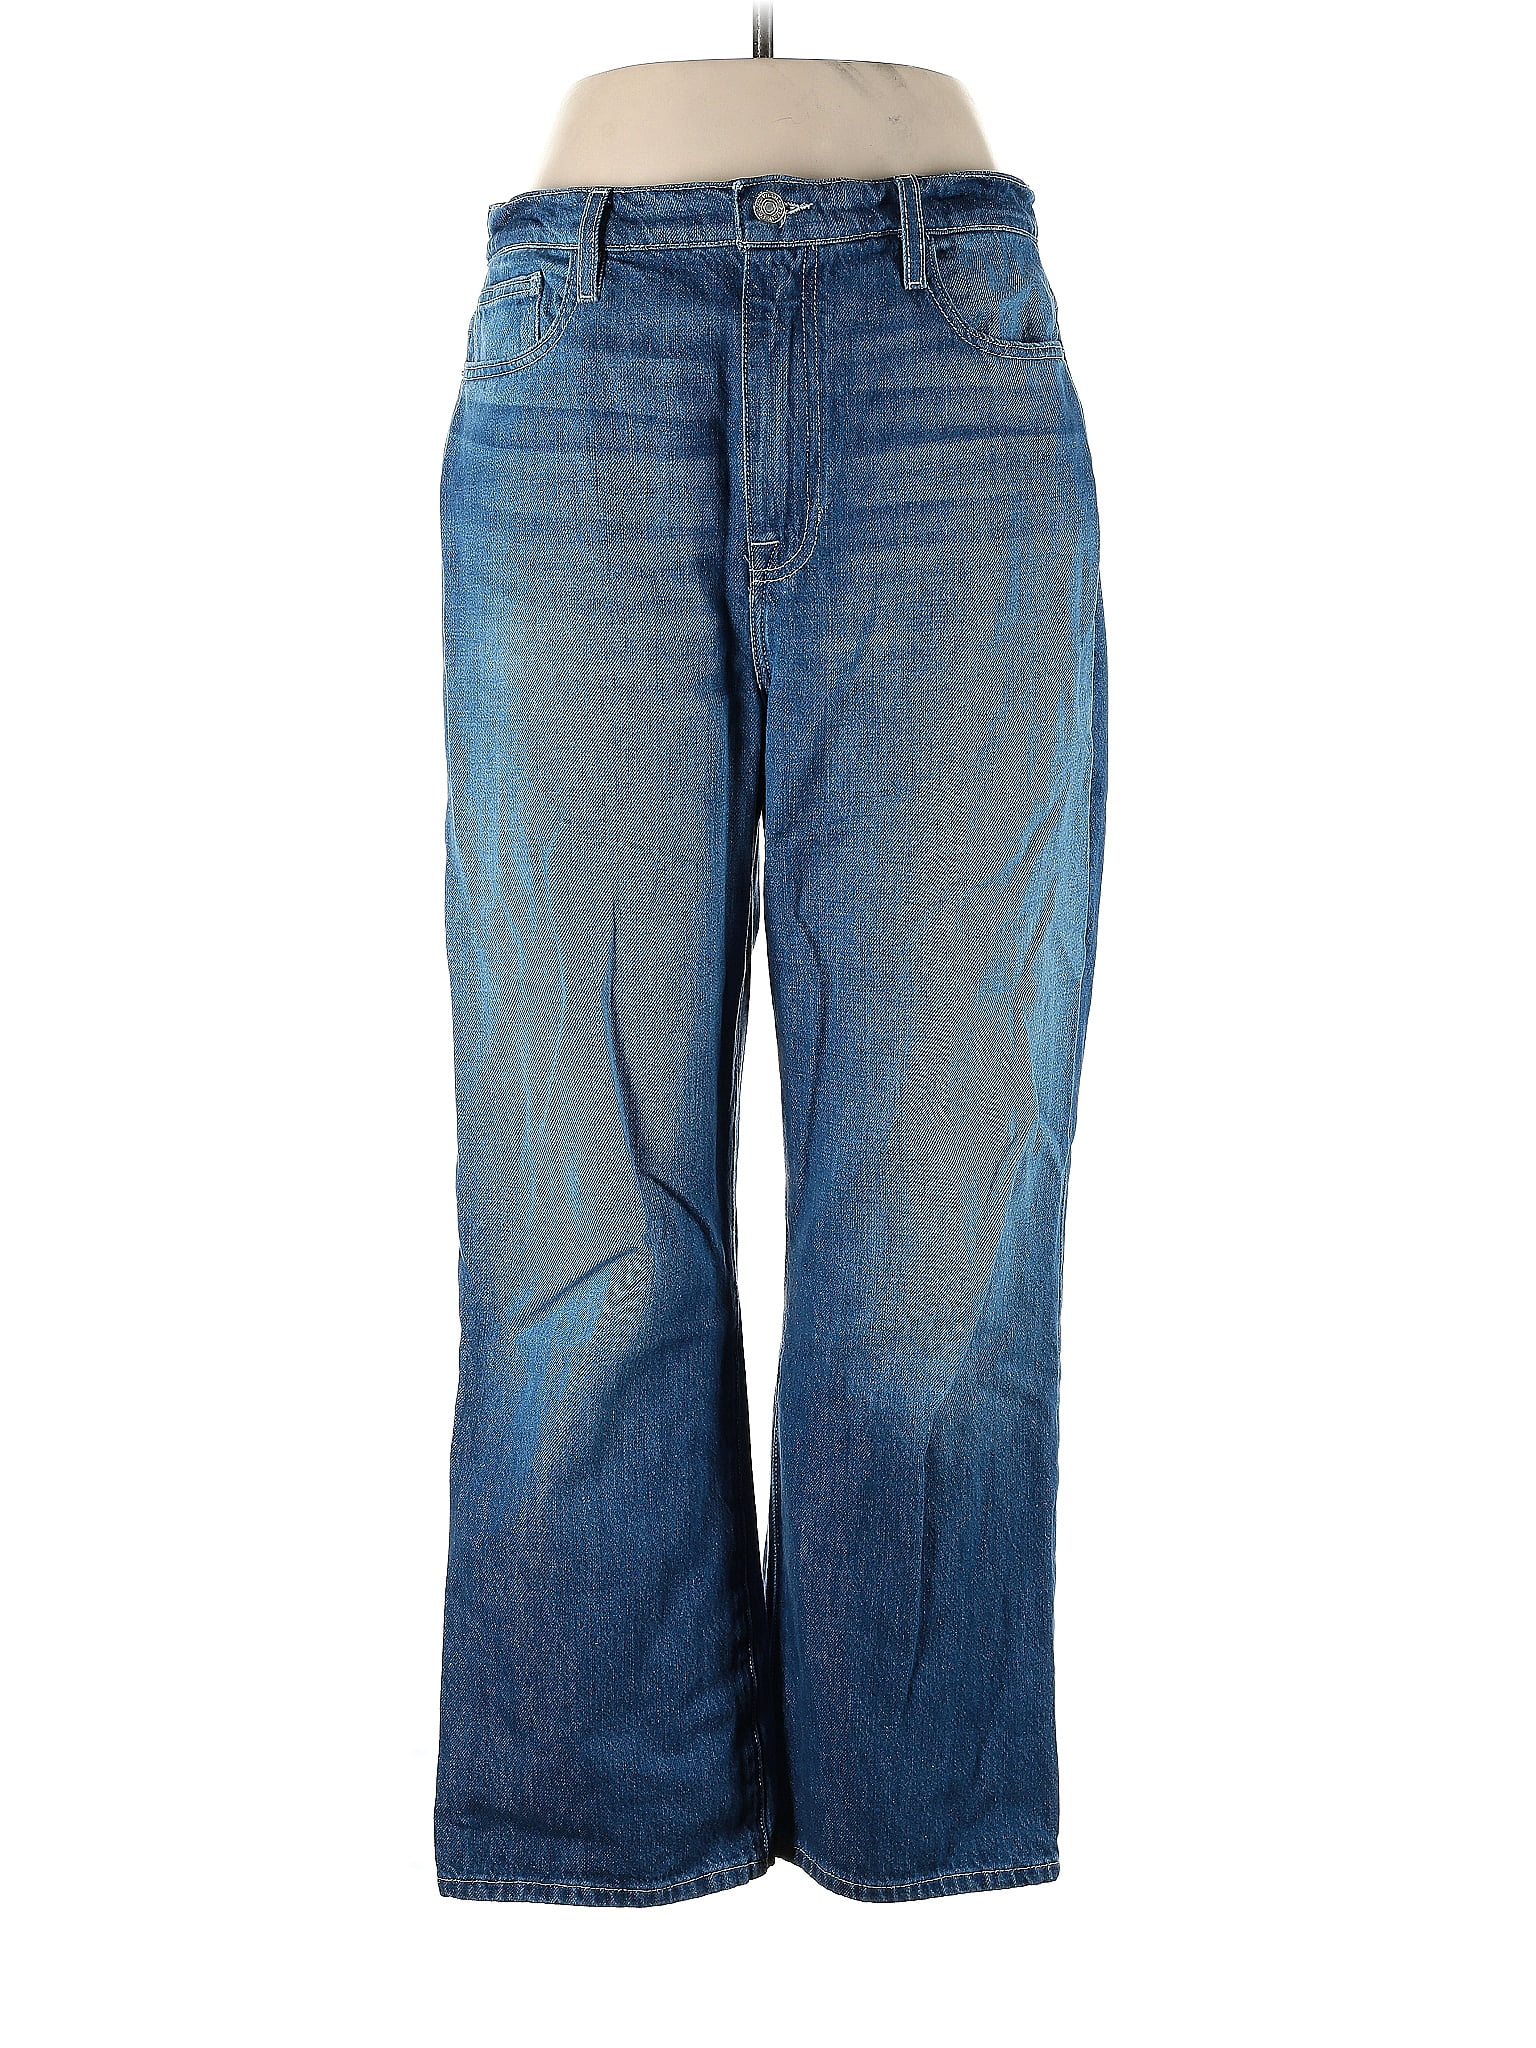 FRAME Solid Blue Jeans 31 Waist - 78% off | ThredUp